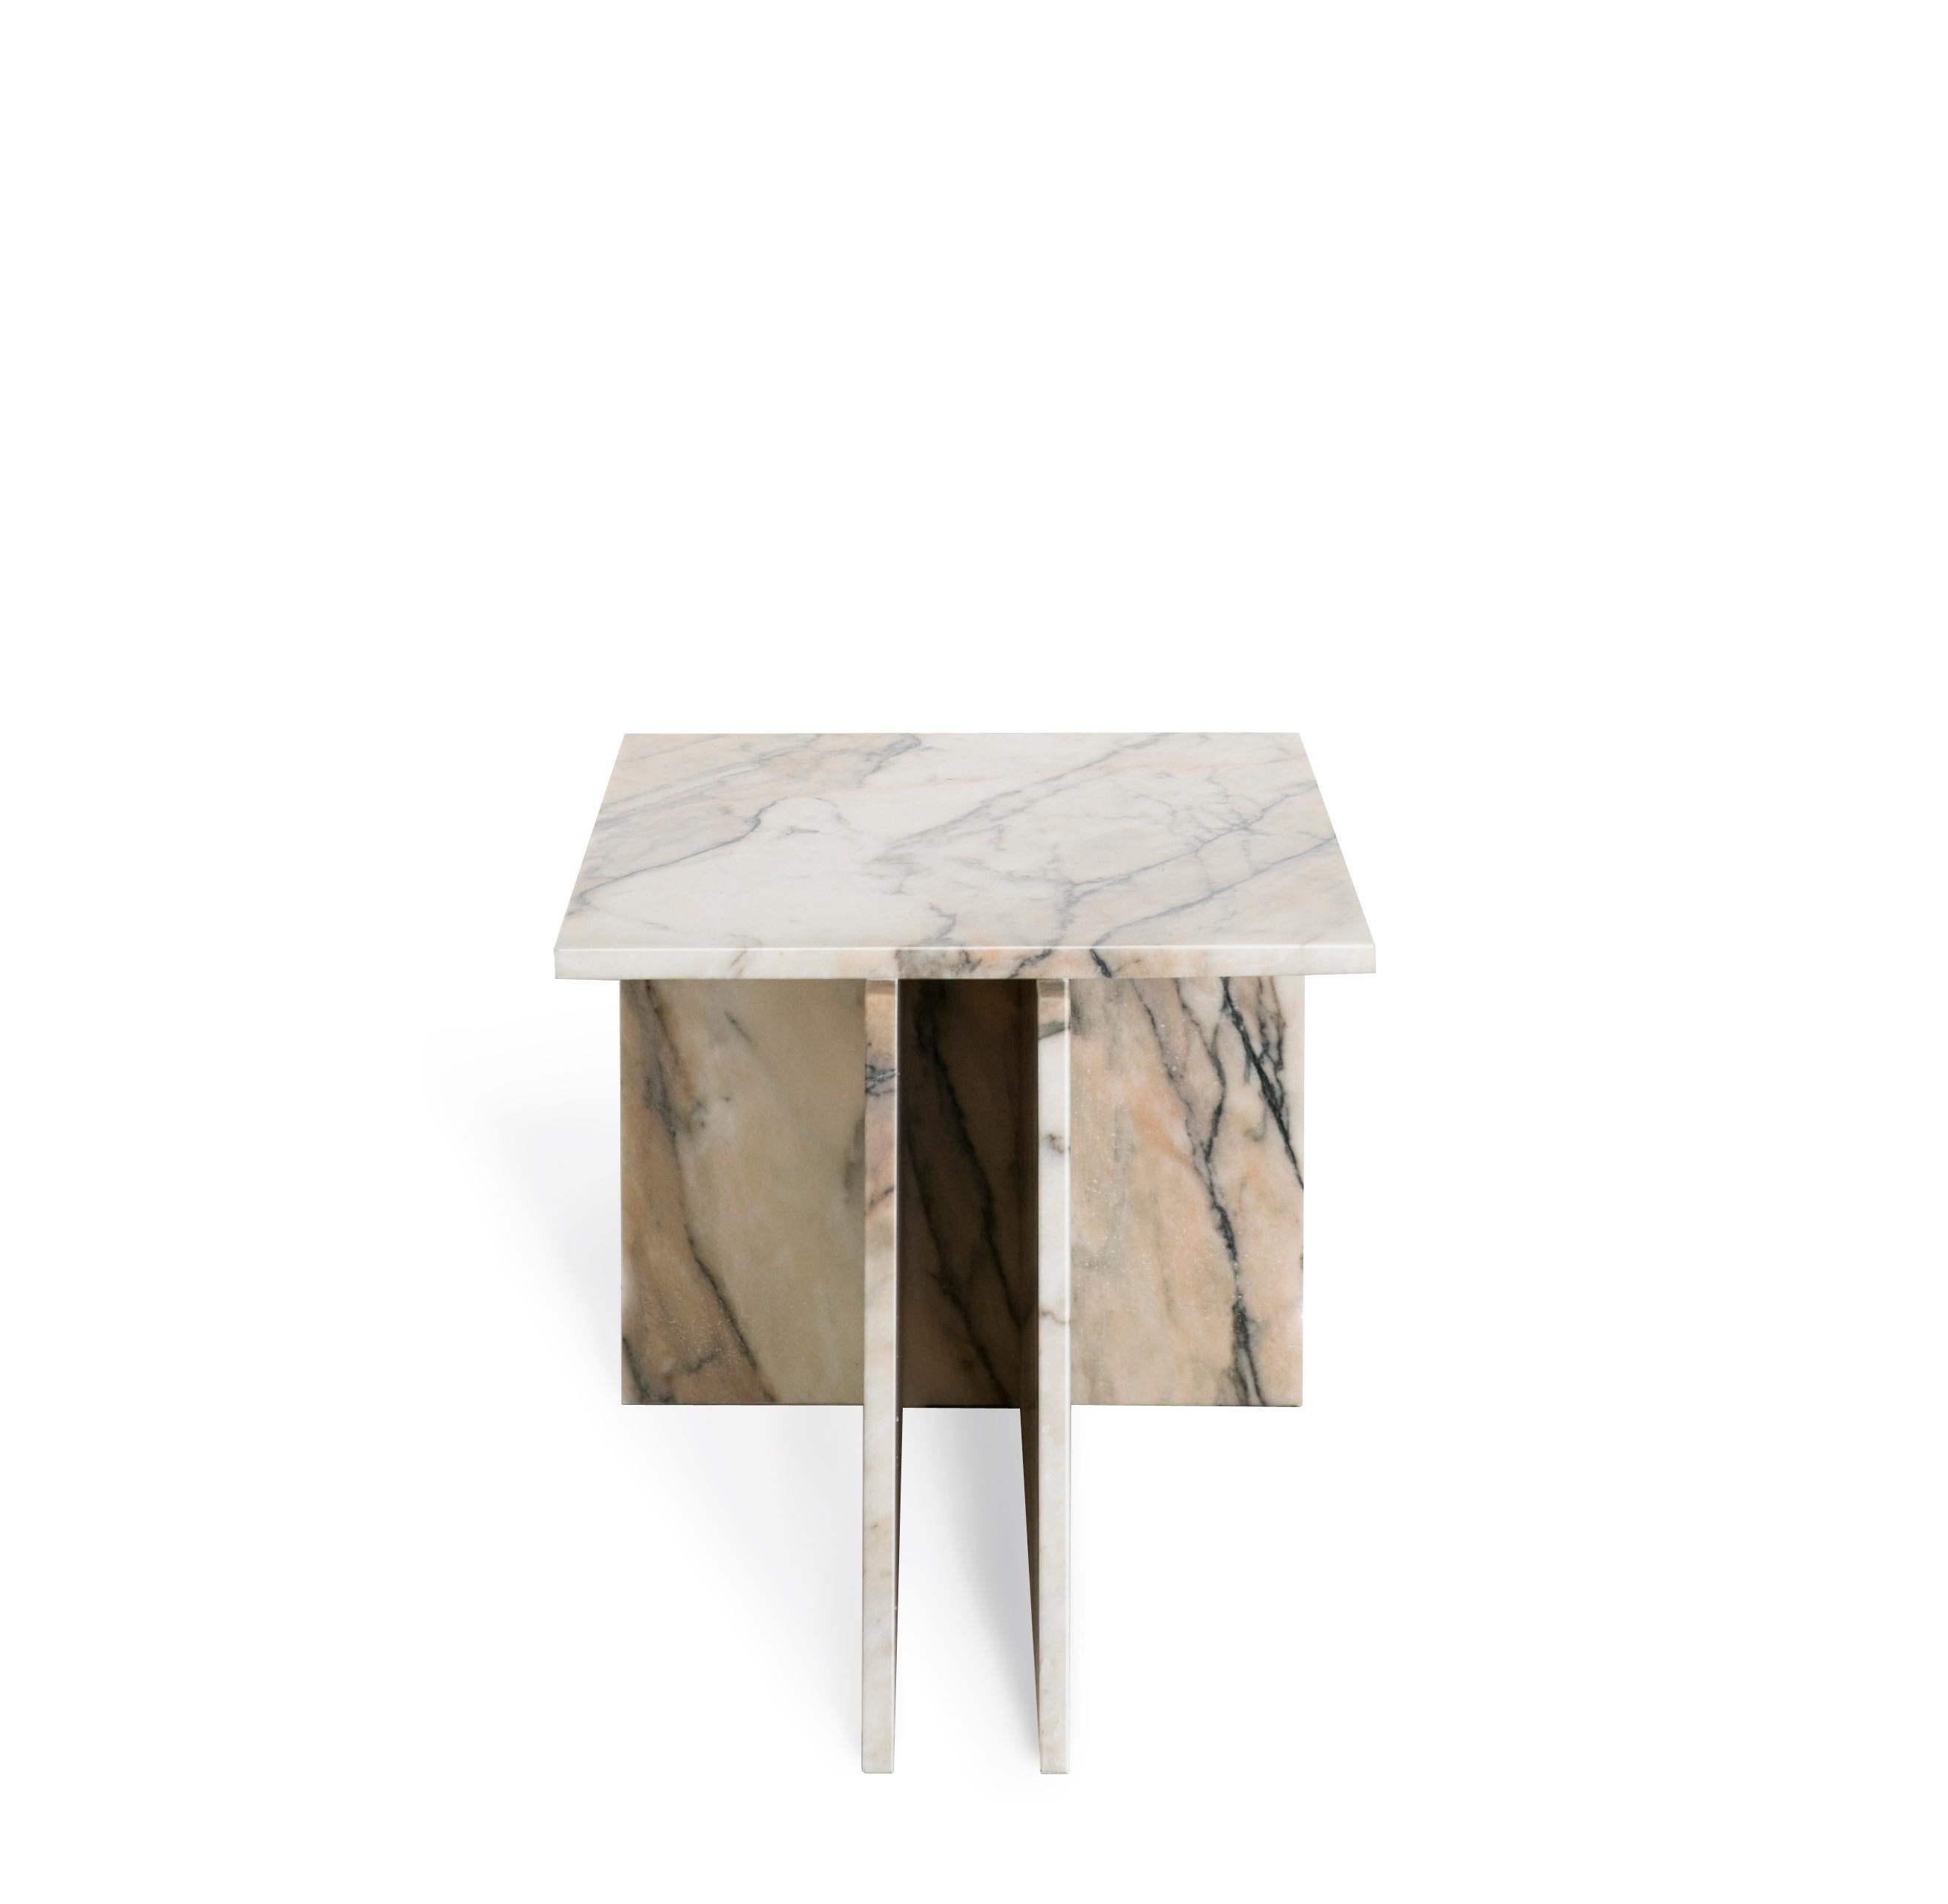 La table THÈ est une table polyvalente qui peut être utilisée comme table d'appoint ou table basse.

Deux plans verticaux se rejoignent sur un autre plan, composant une base en forme de T pour le plateau de la table. Produit en marbre.  Il peut être